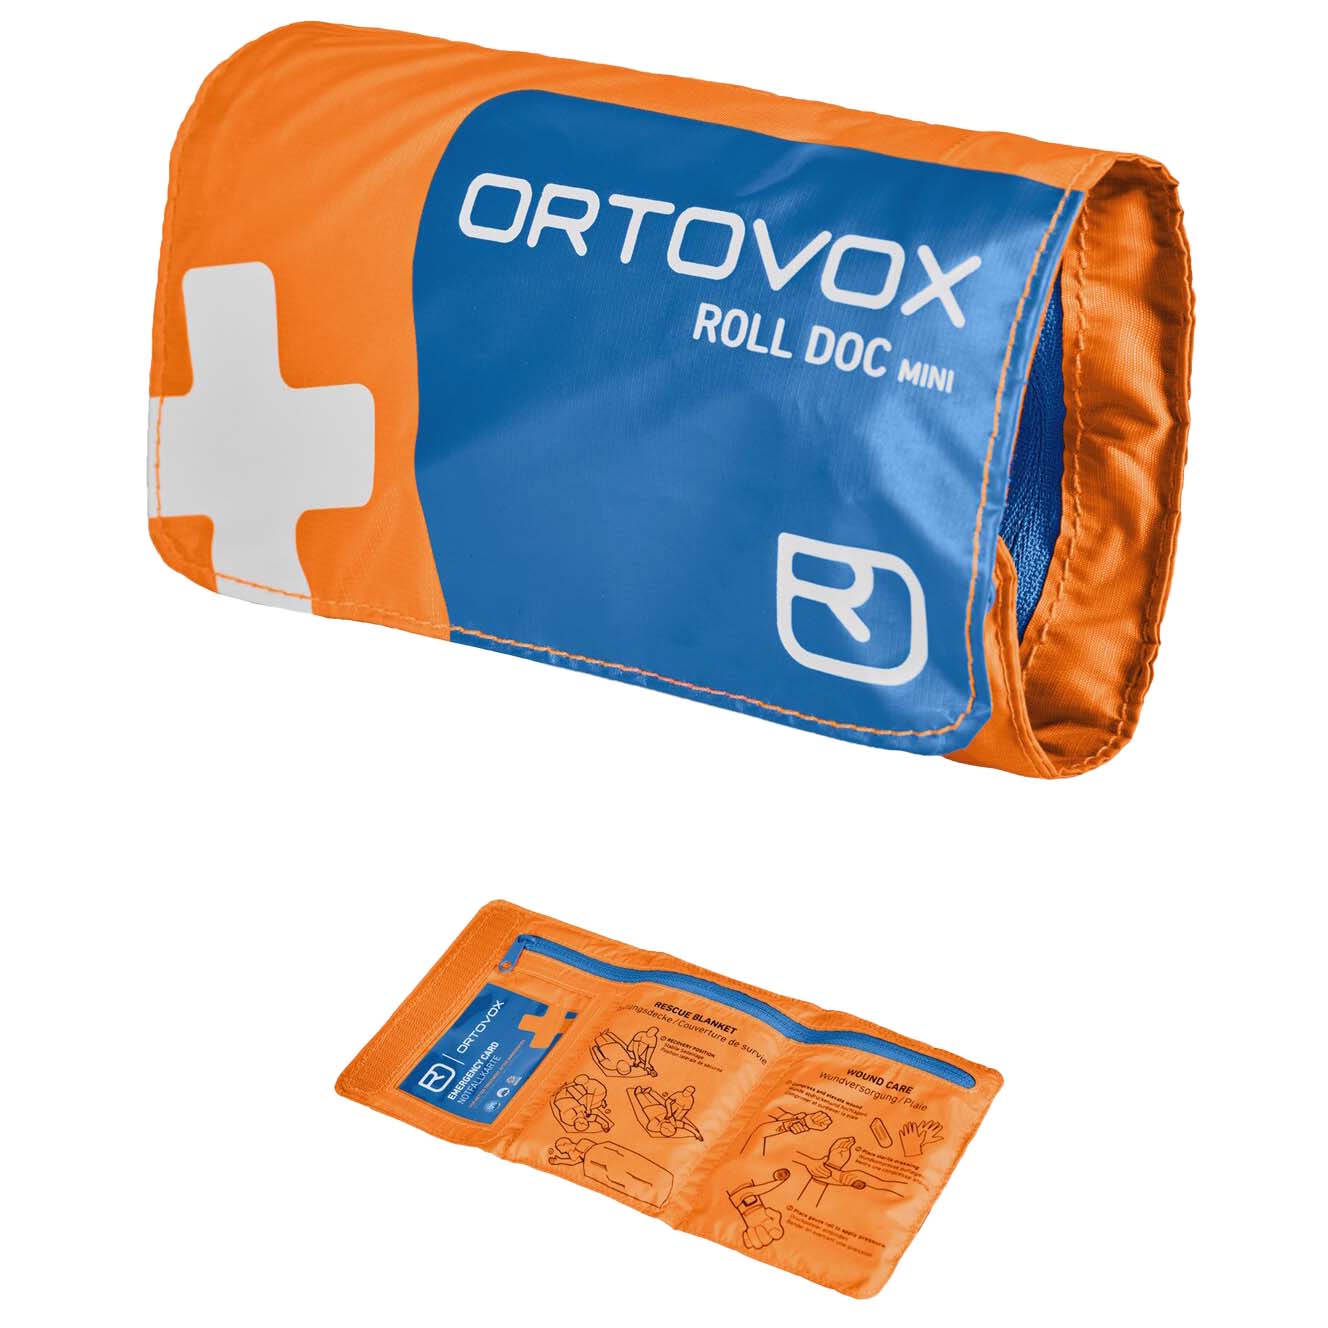 Ortovox First Aid Roll Doc Mini First Aid Kit